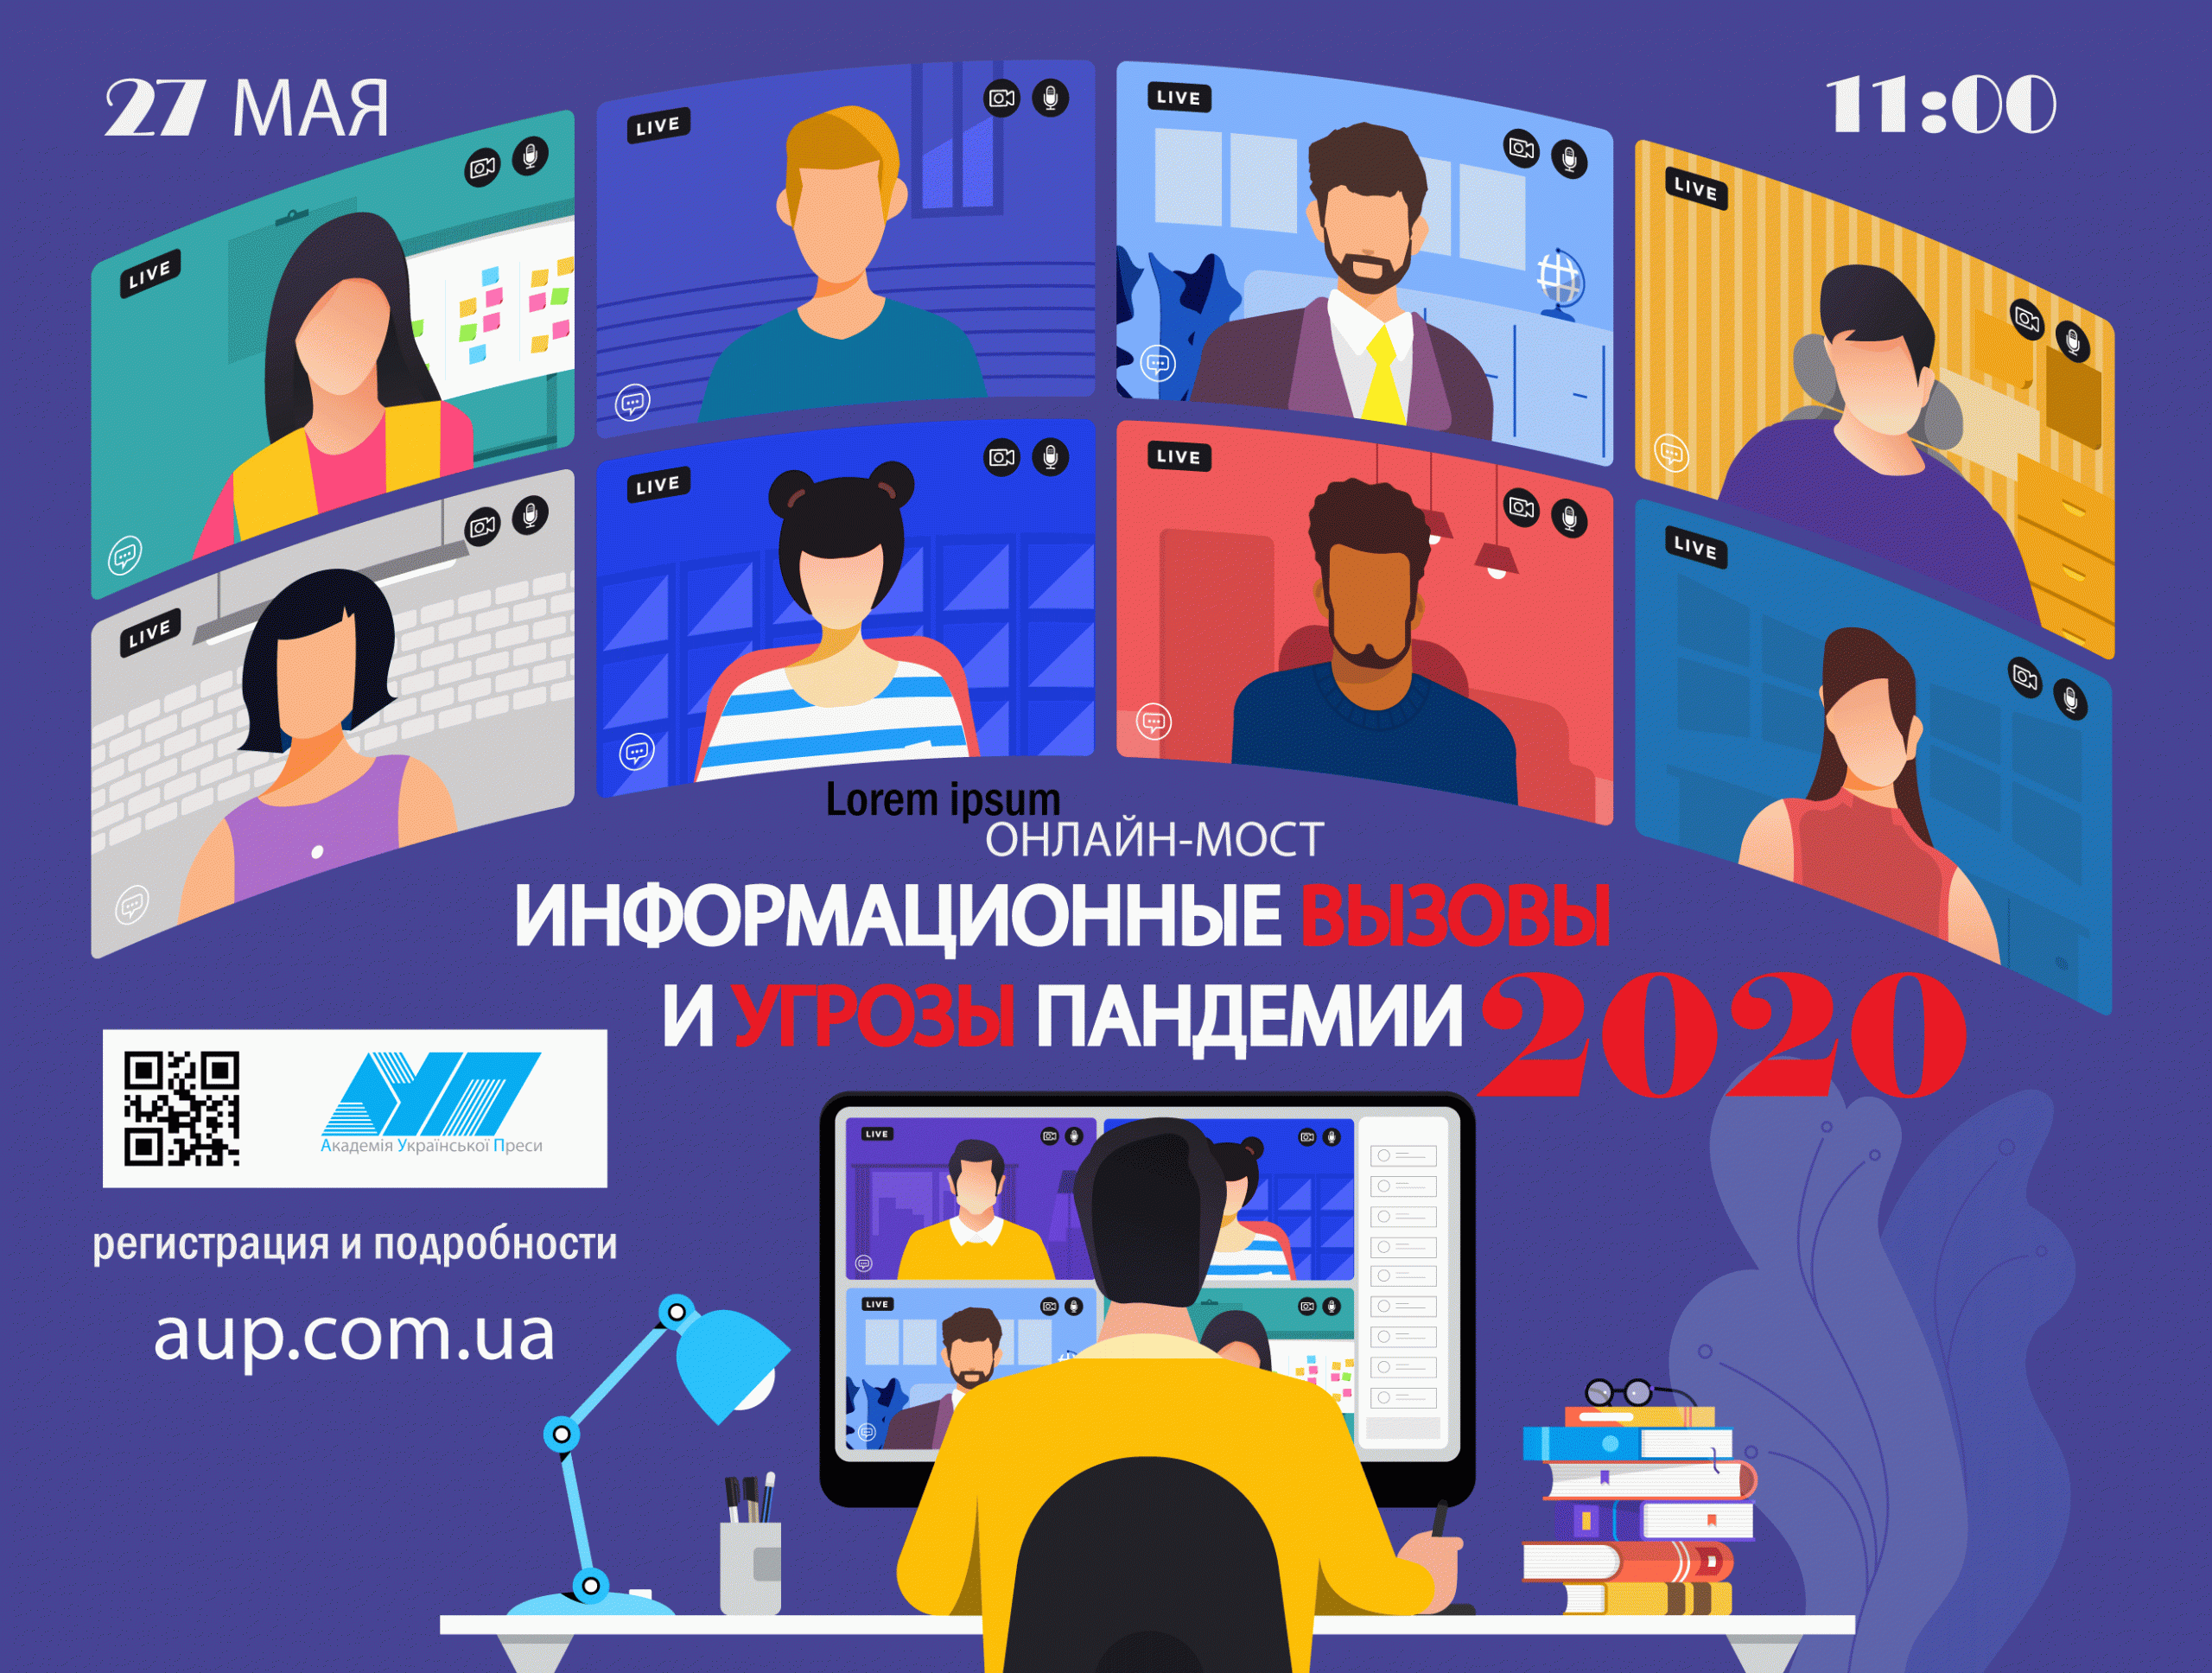 Прямая трансляция онлайн-мост «Информационные вызовы и угрозы пандемии 2020» + программа выступлений